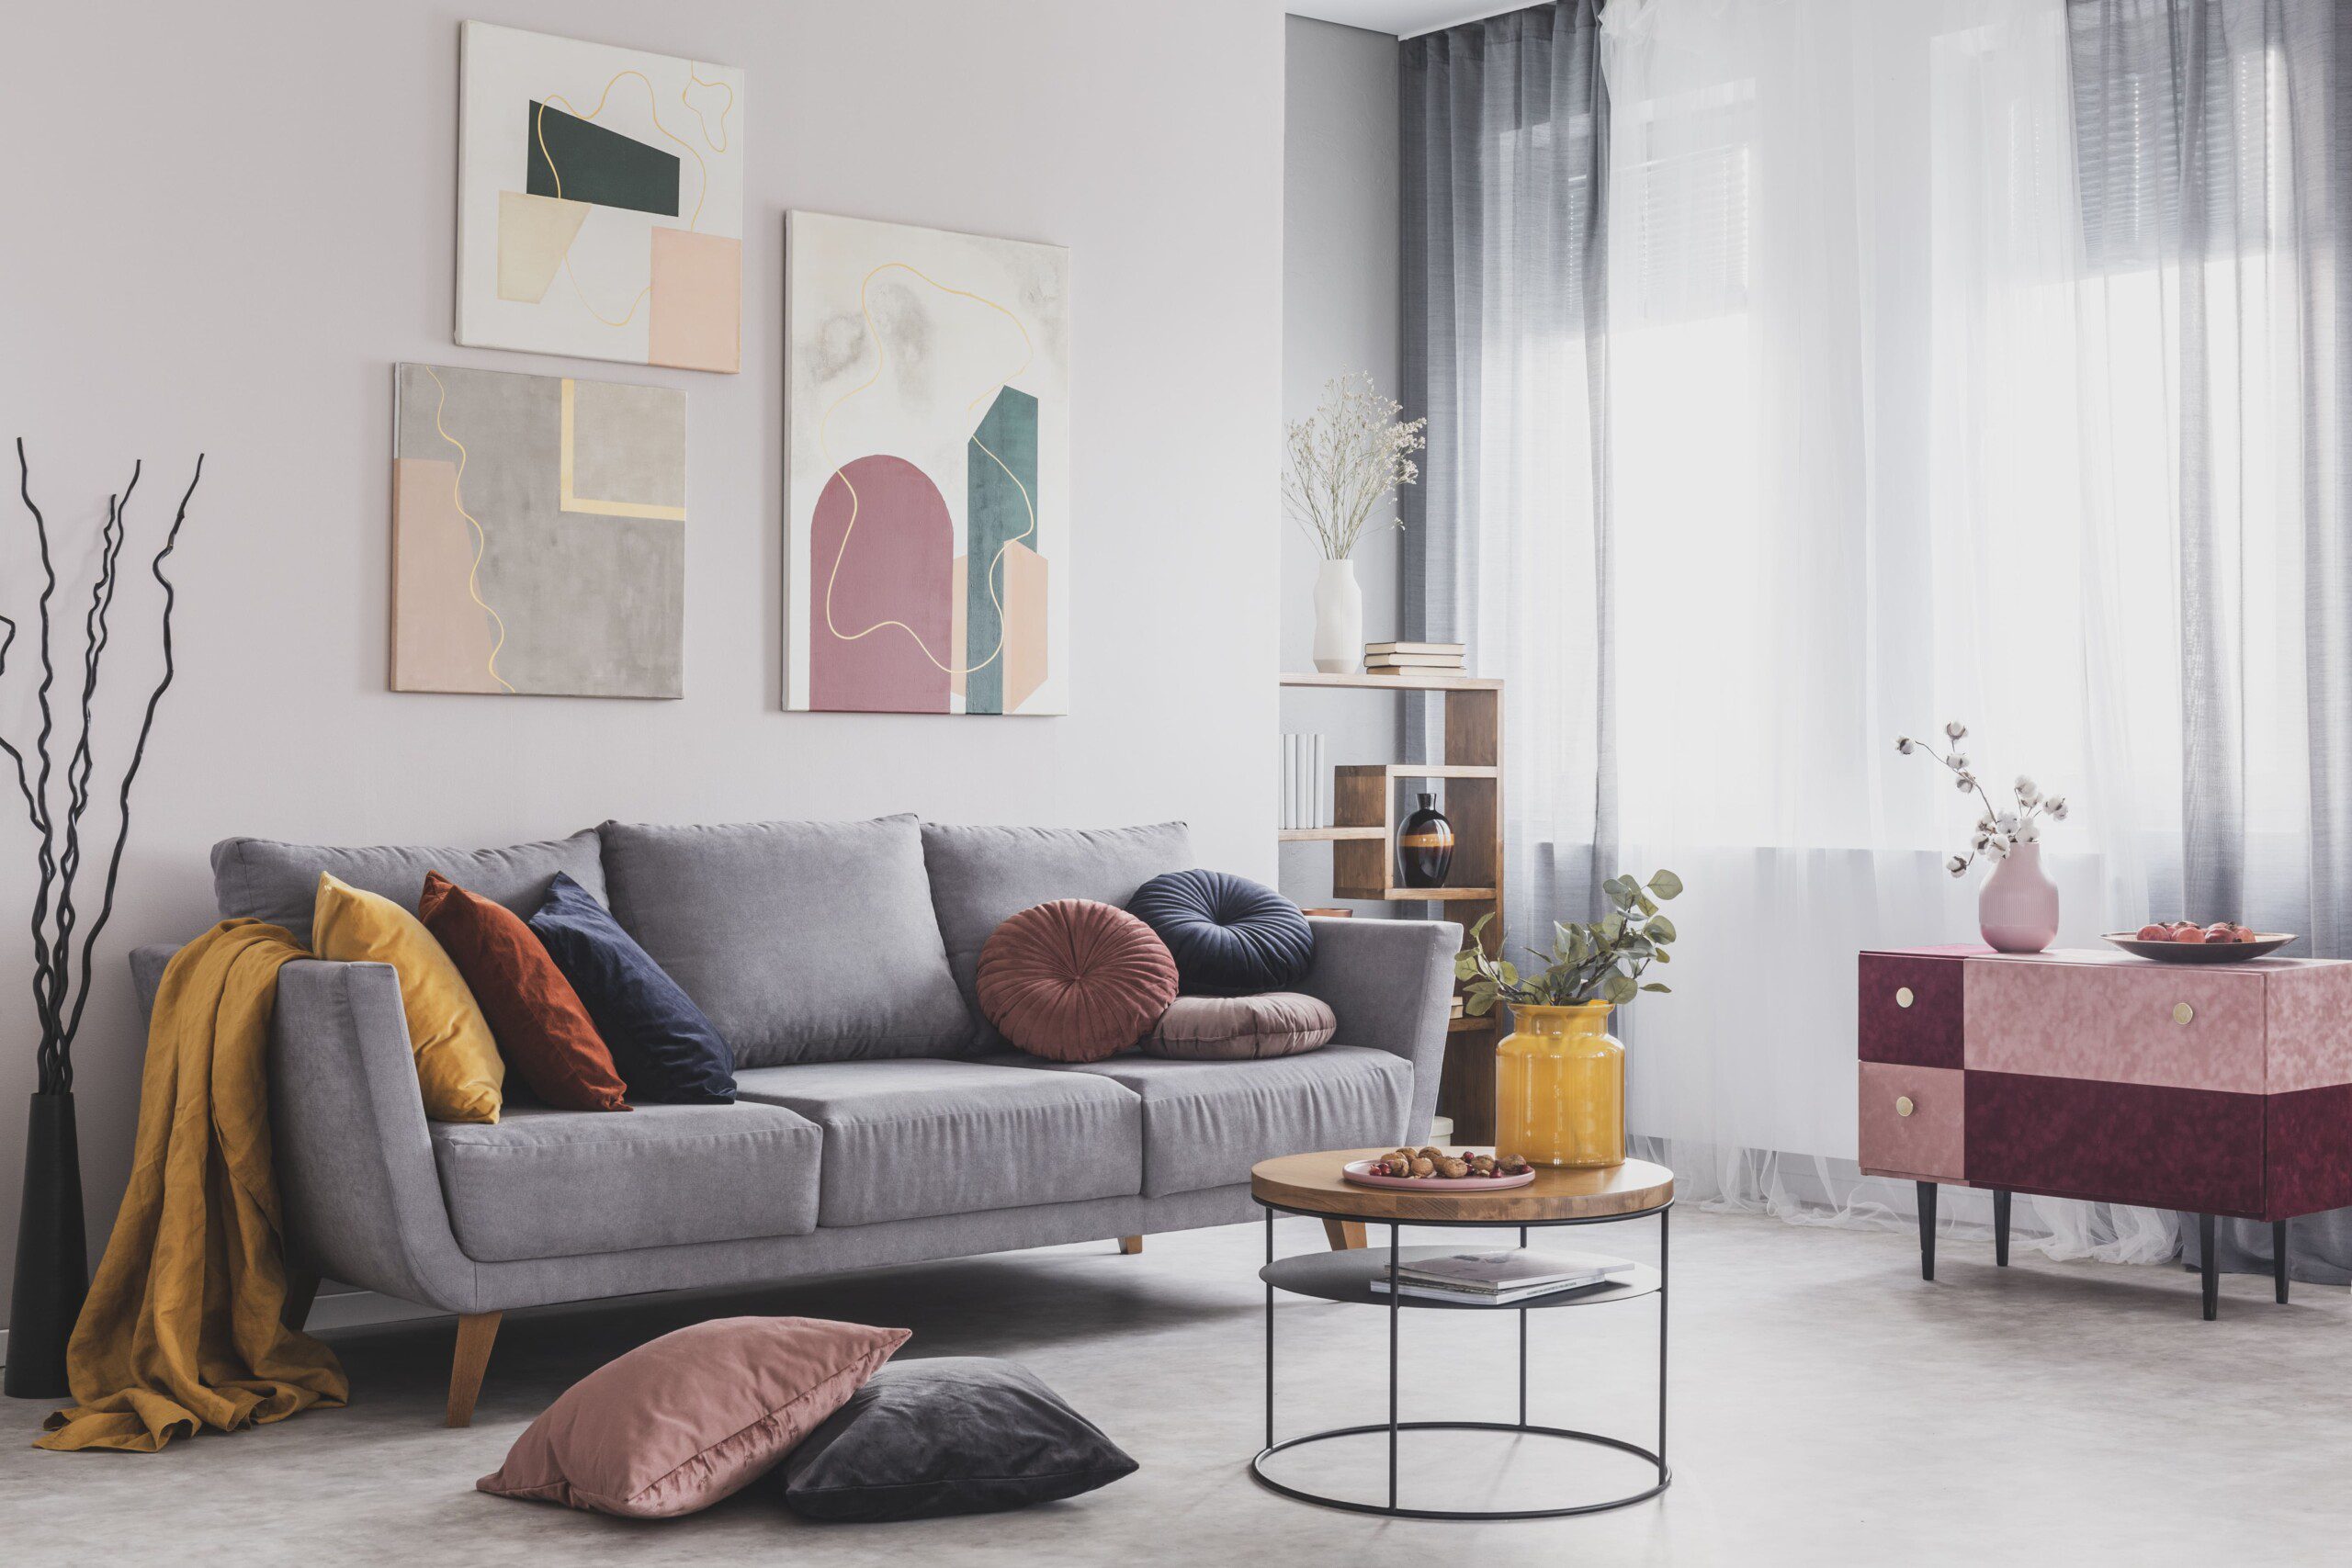 Sala de estar com quadros atrás do sofá cinza, almofadas coloridas e decoração moderna. 